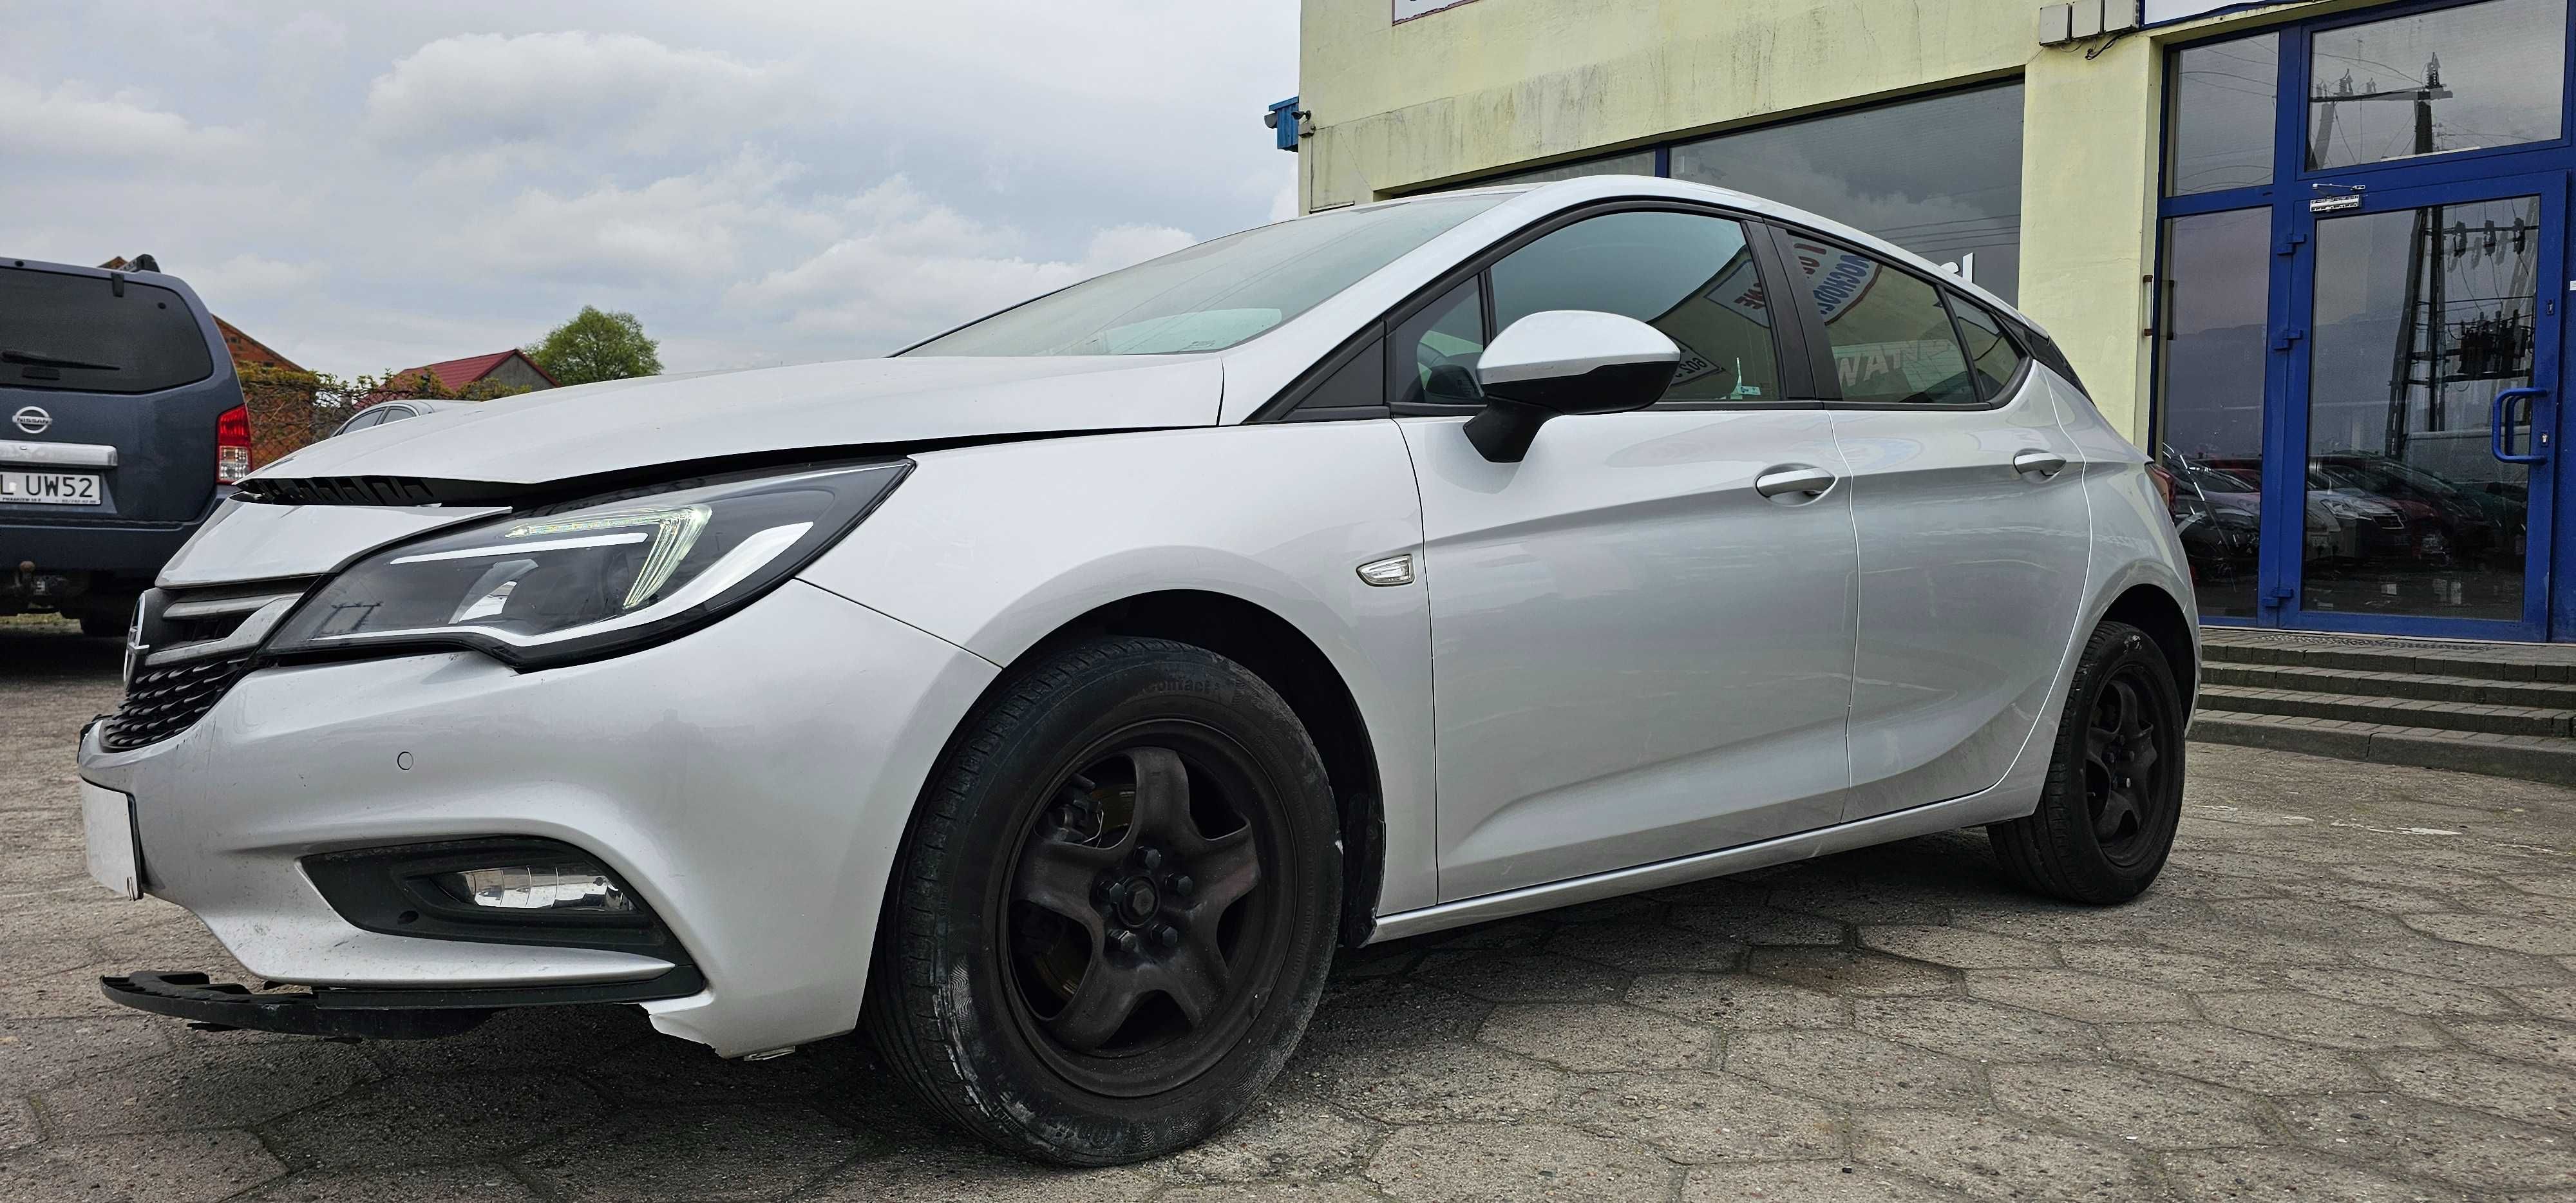 Opel Astra K 1.6 Cdti 110 Km Klima Navi Pdc